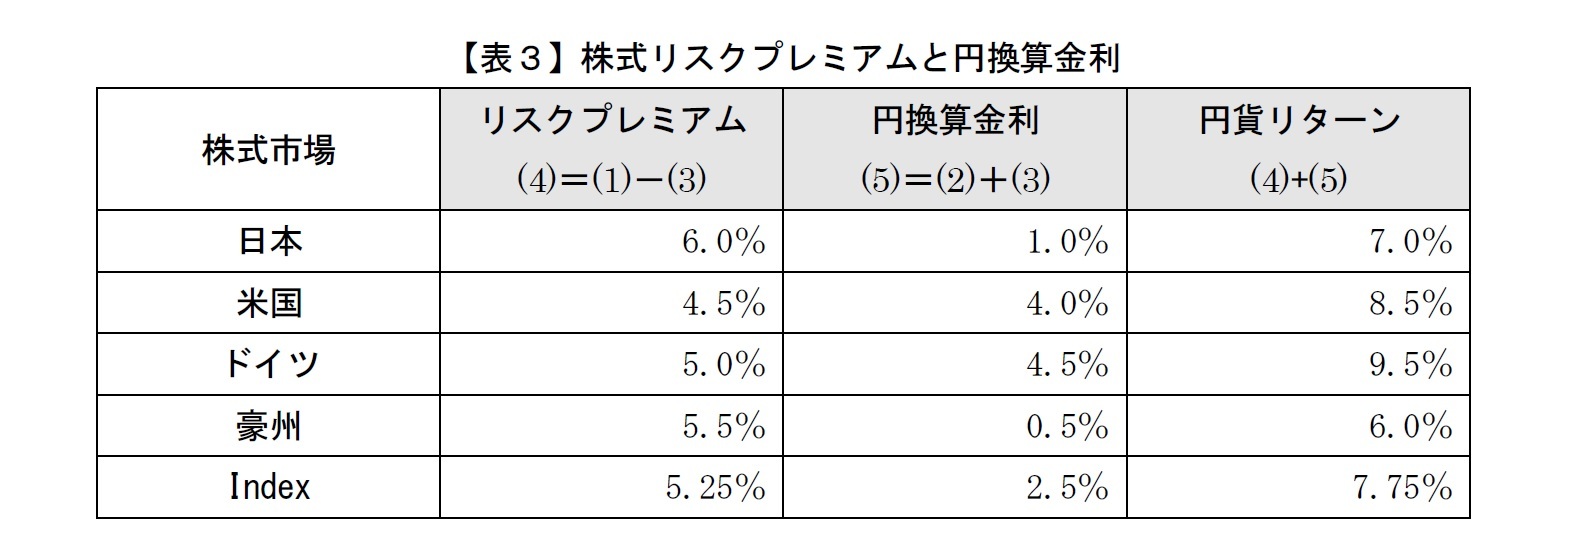 【表３】株式リスクプレミアムと円換算金利